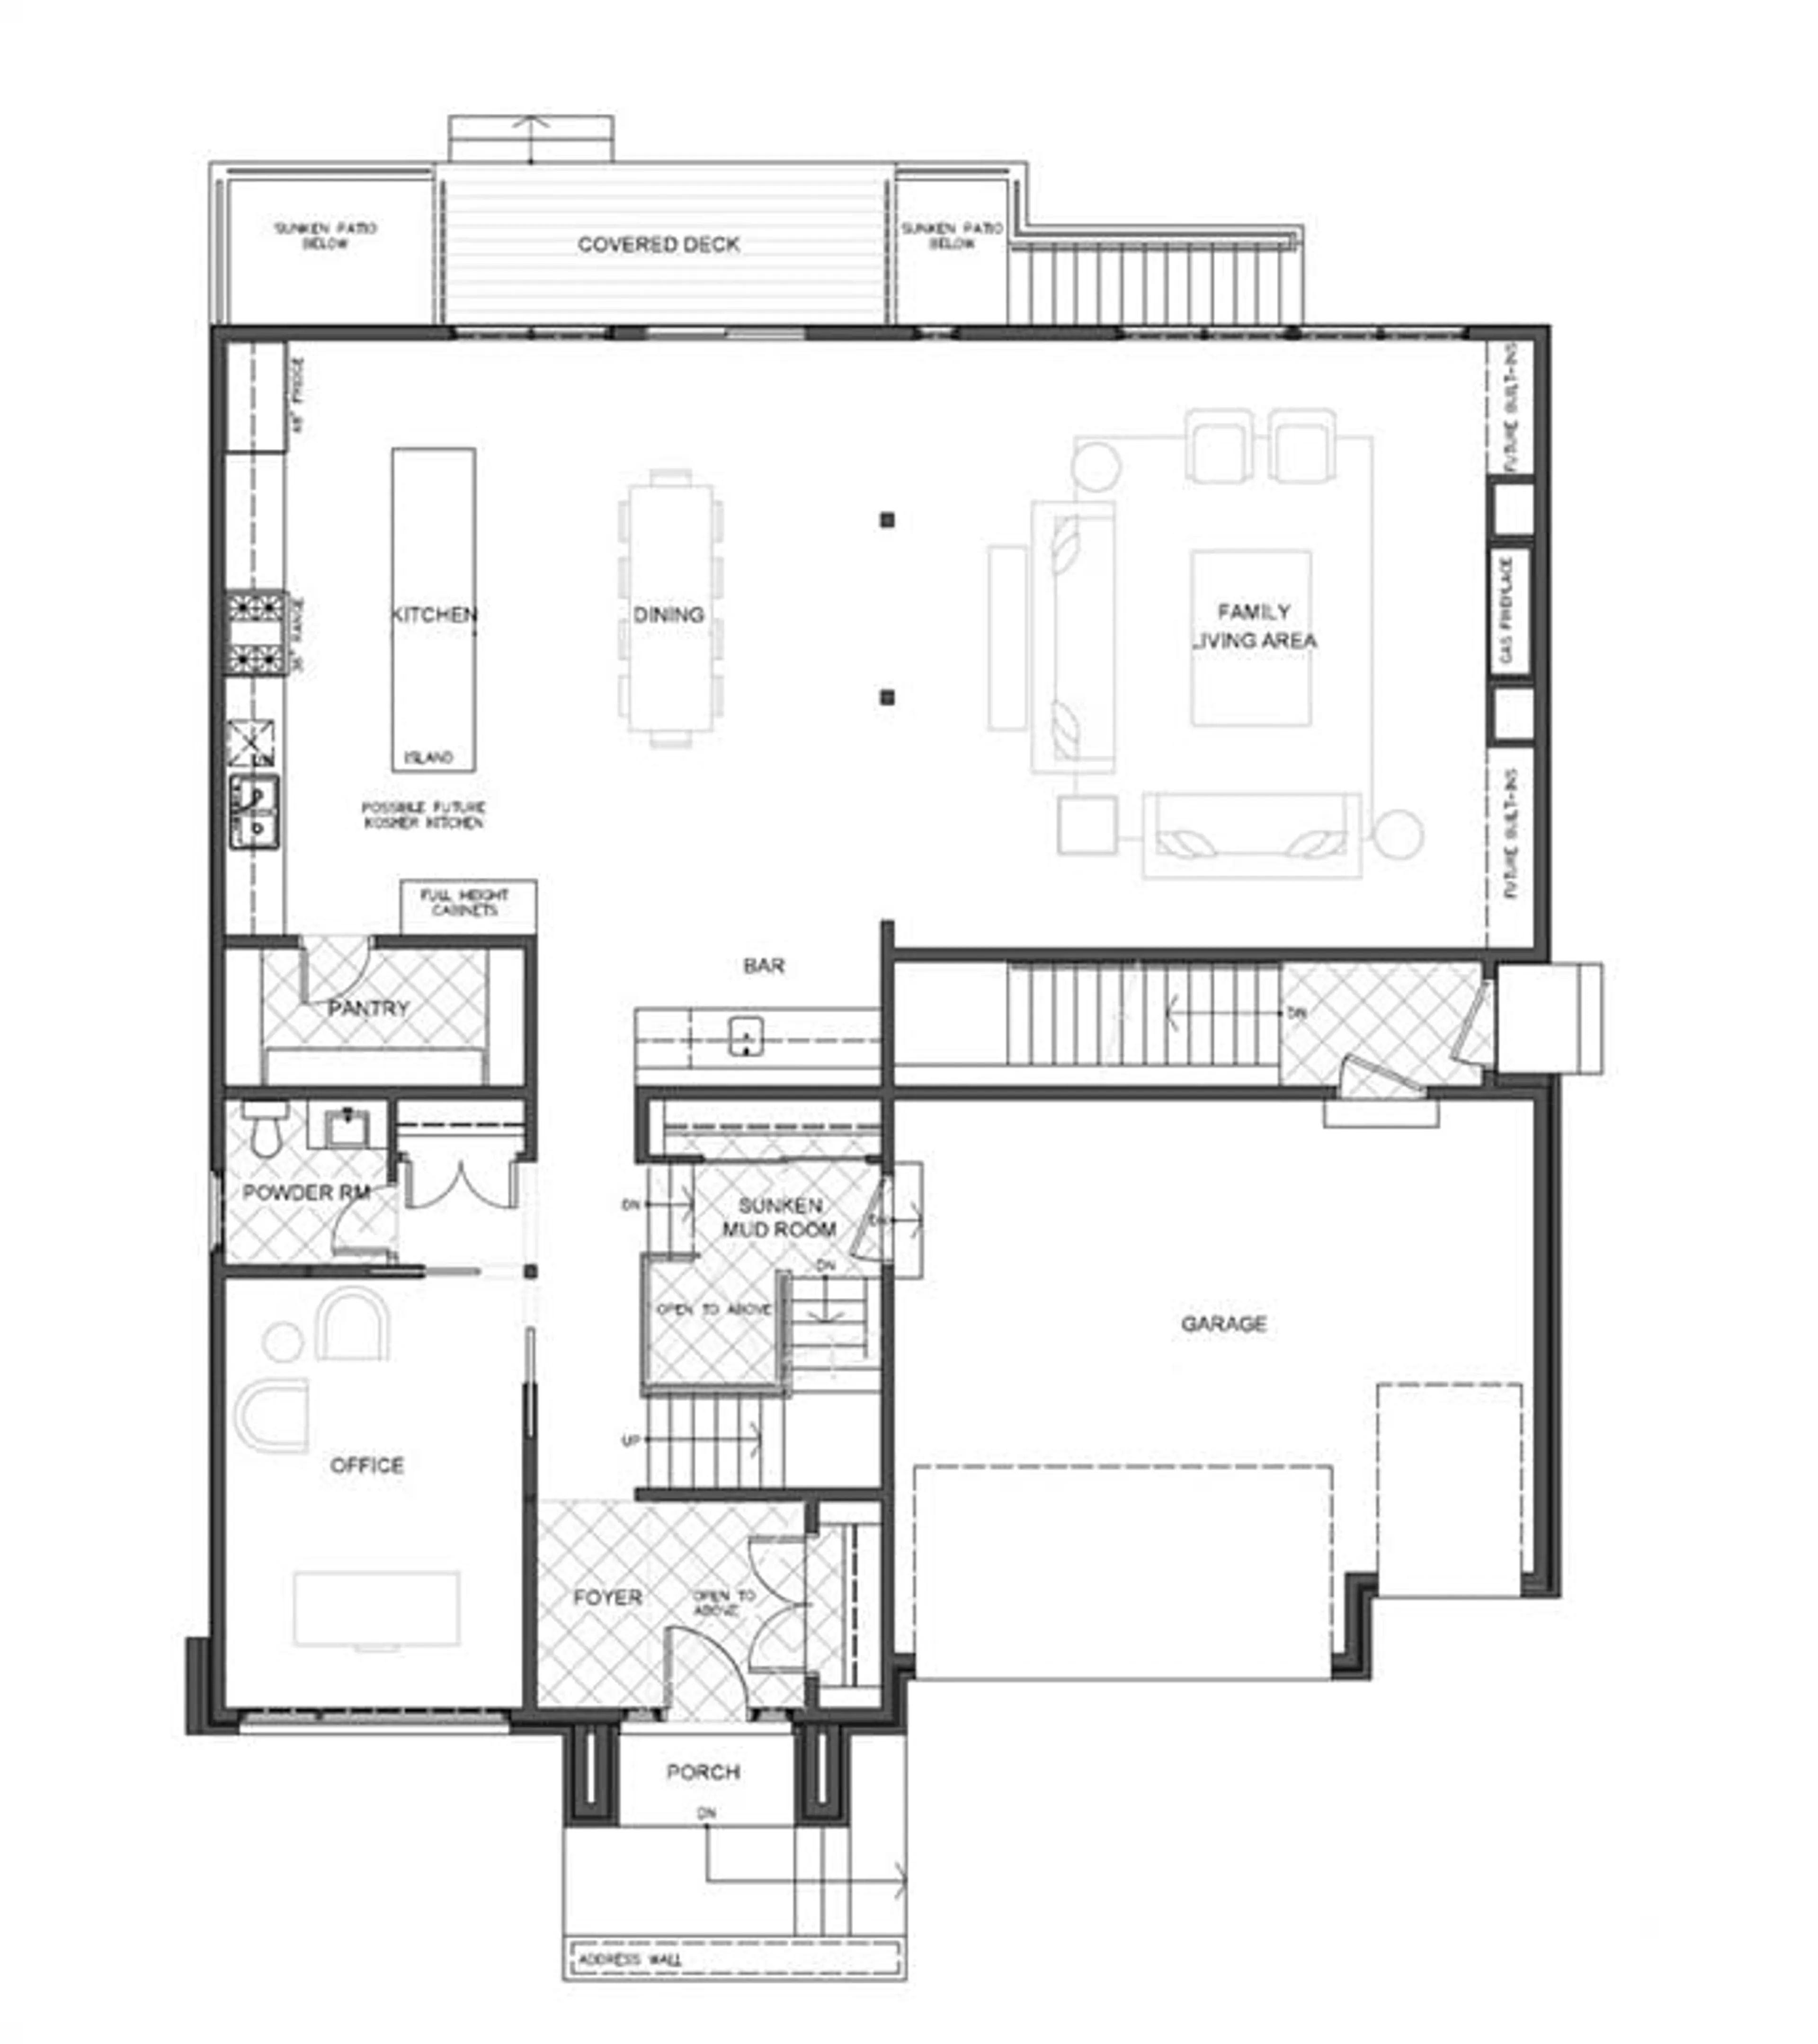 Floor plan for 836 HARE Ave, Ottawa Ontario K2A 3J2